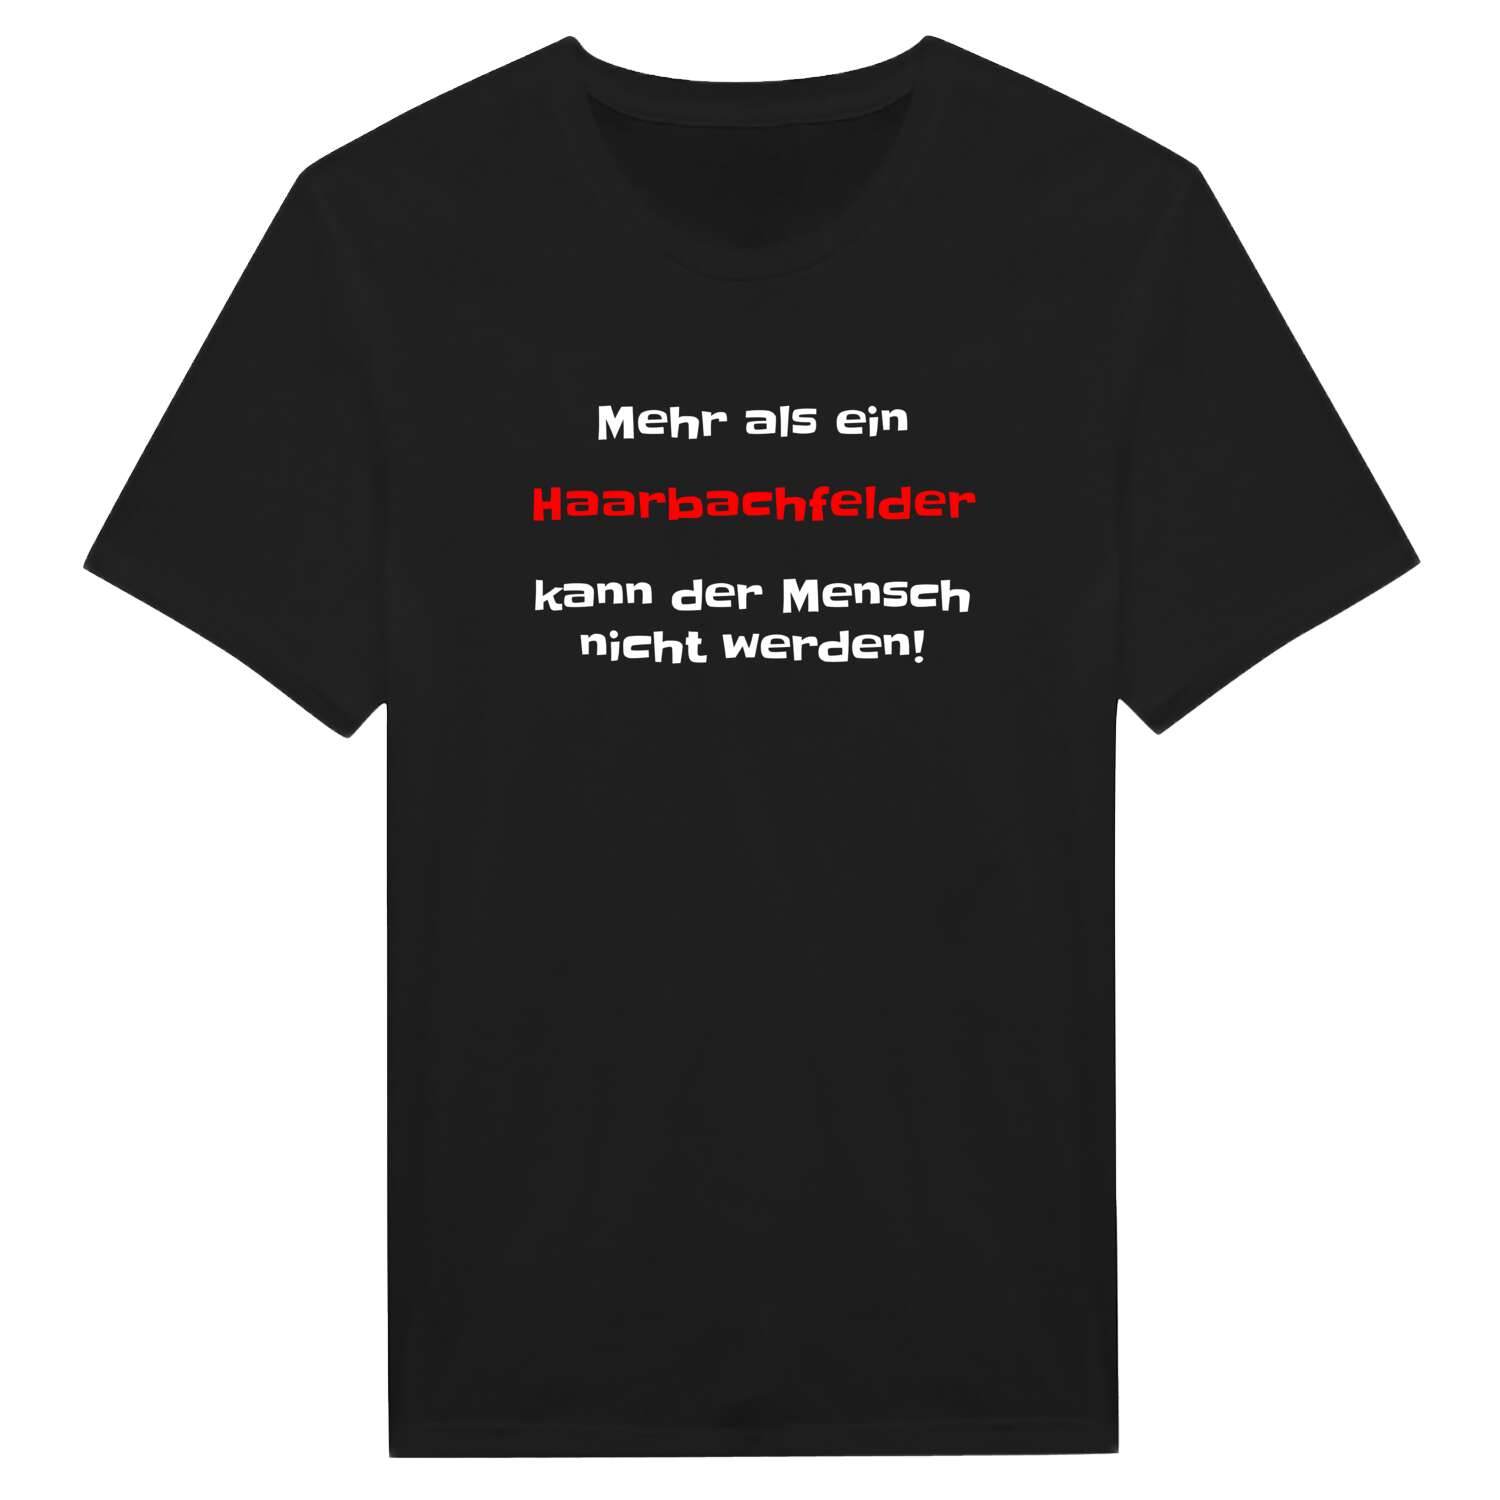 Haarbachfeld T-Shirt »Mehr als ein«